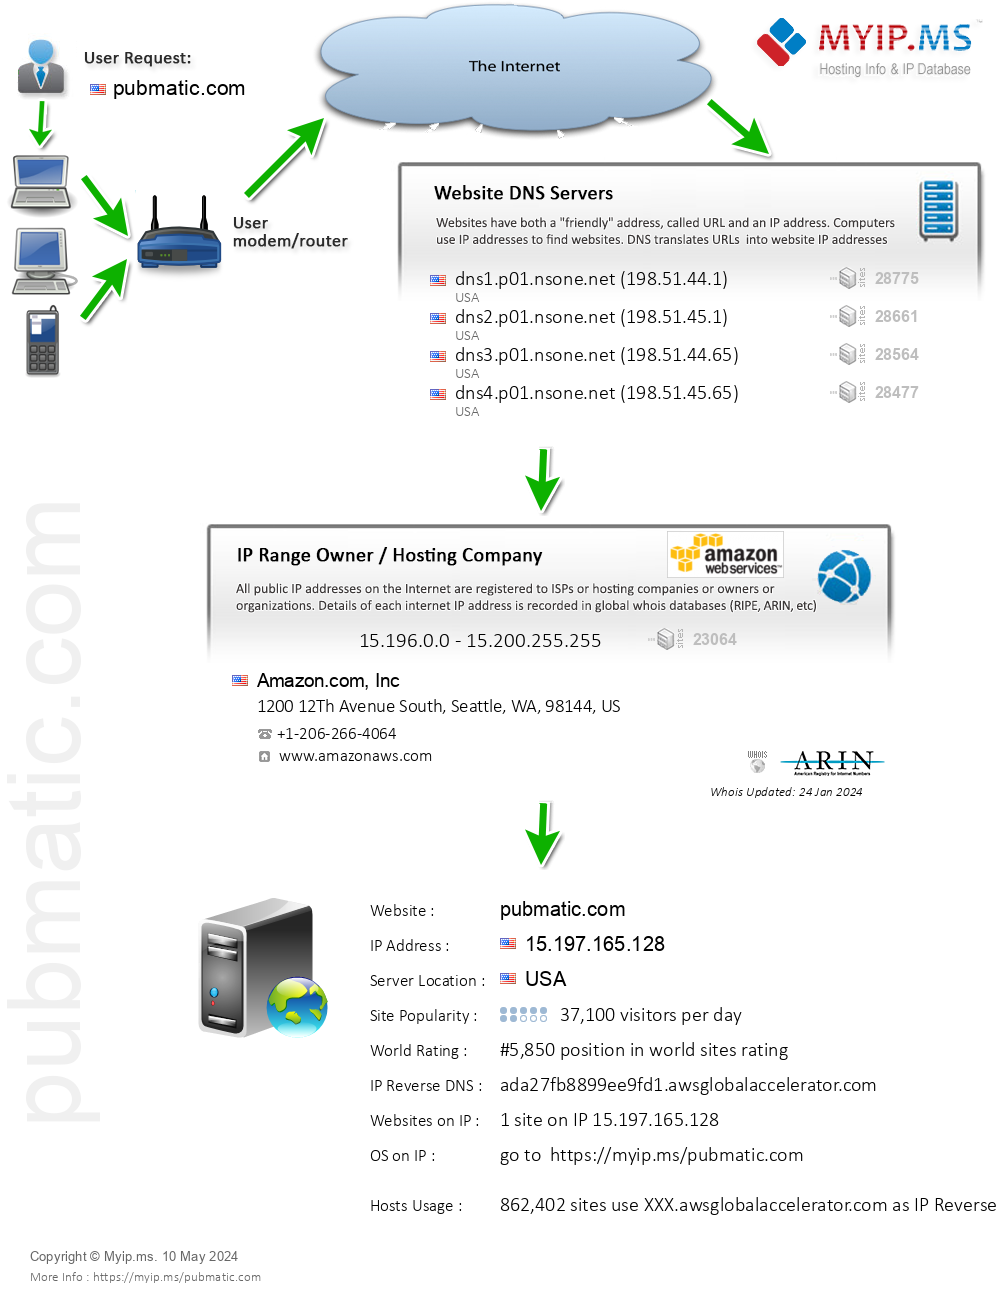 Pubmatic.com - Website Hosting Visual IP Diagram